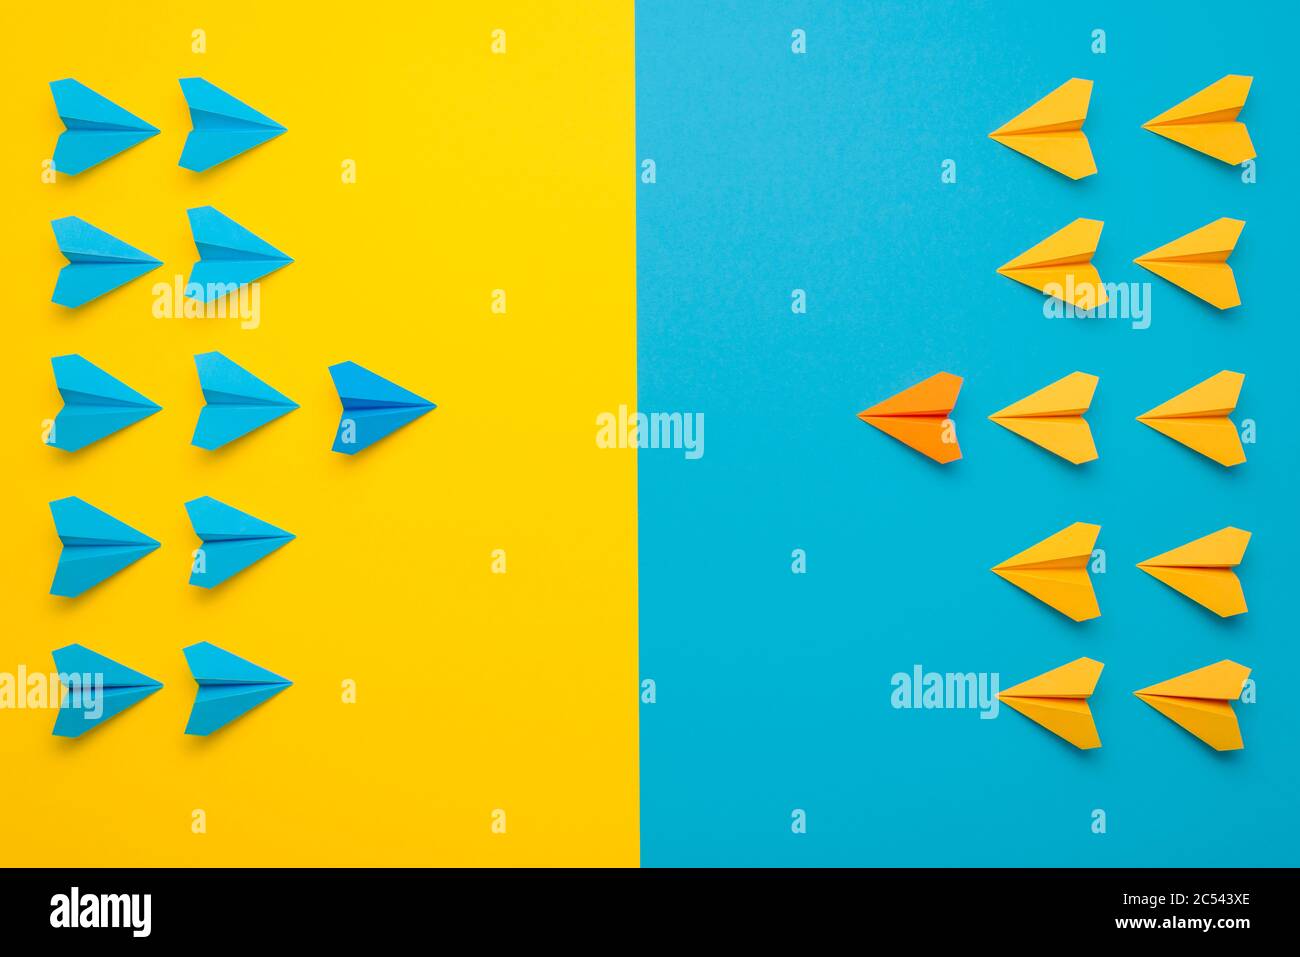 Papierflugzeuge haben sich in 2 Farben, blau und gelb, von Angesicht zu Angesicht in Kampfformation zusammengetan. Eine Konfrontation zwischen zwei Teams, die das Teamkonzept leitet. Stockfoto